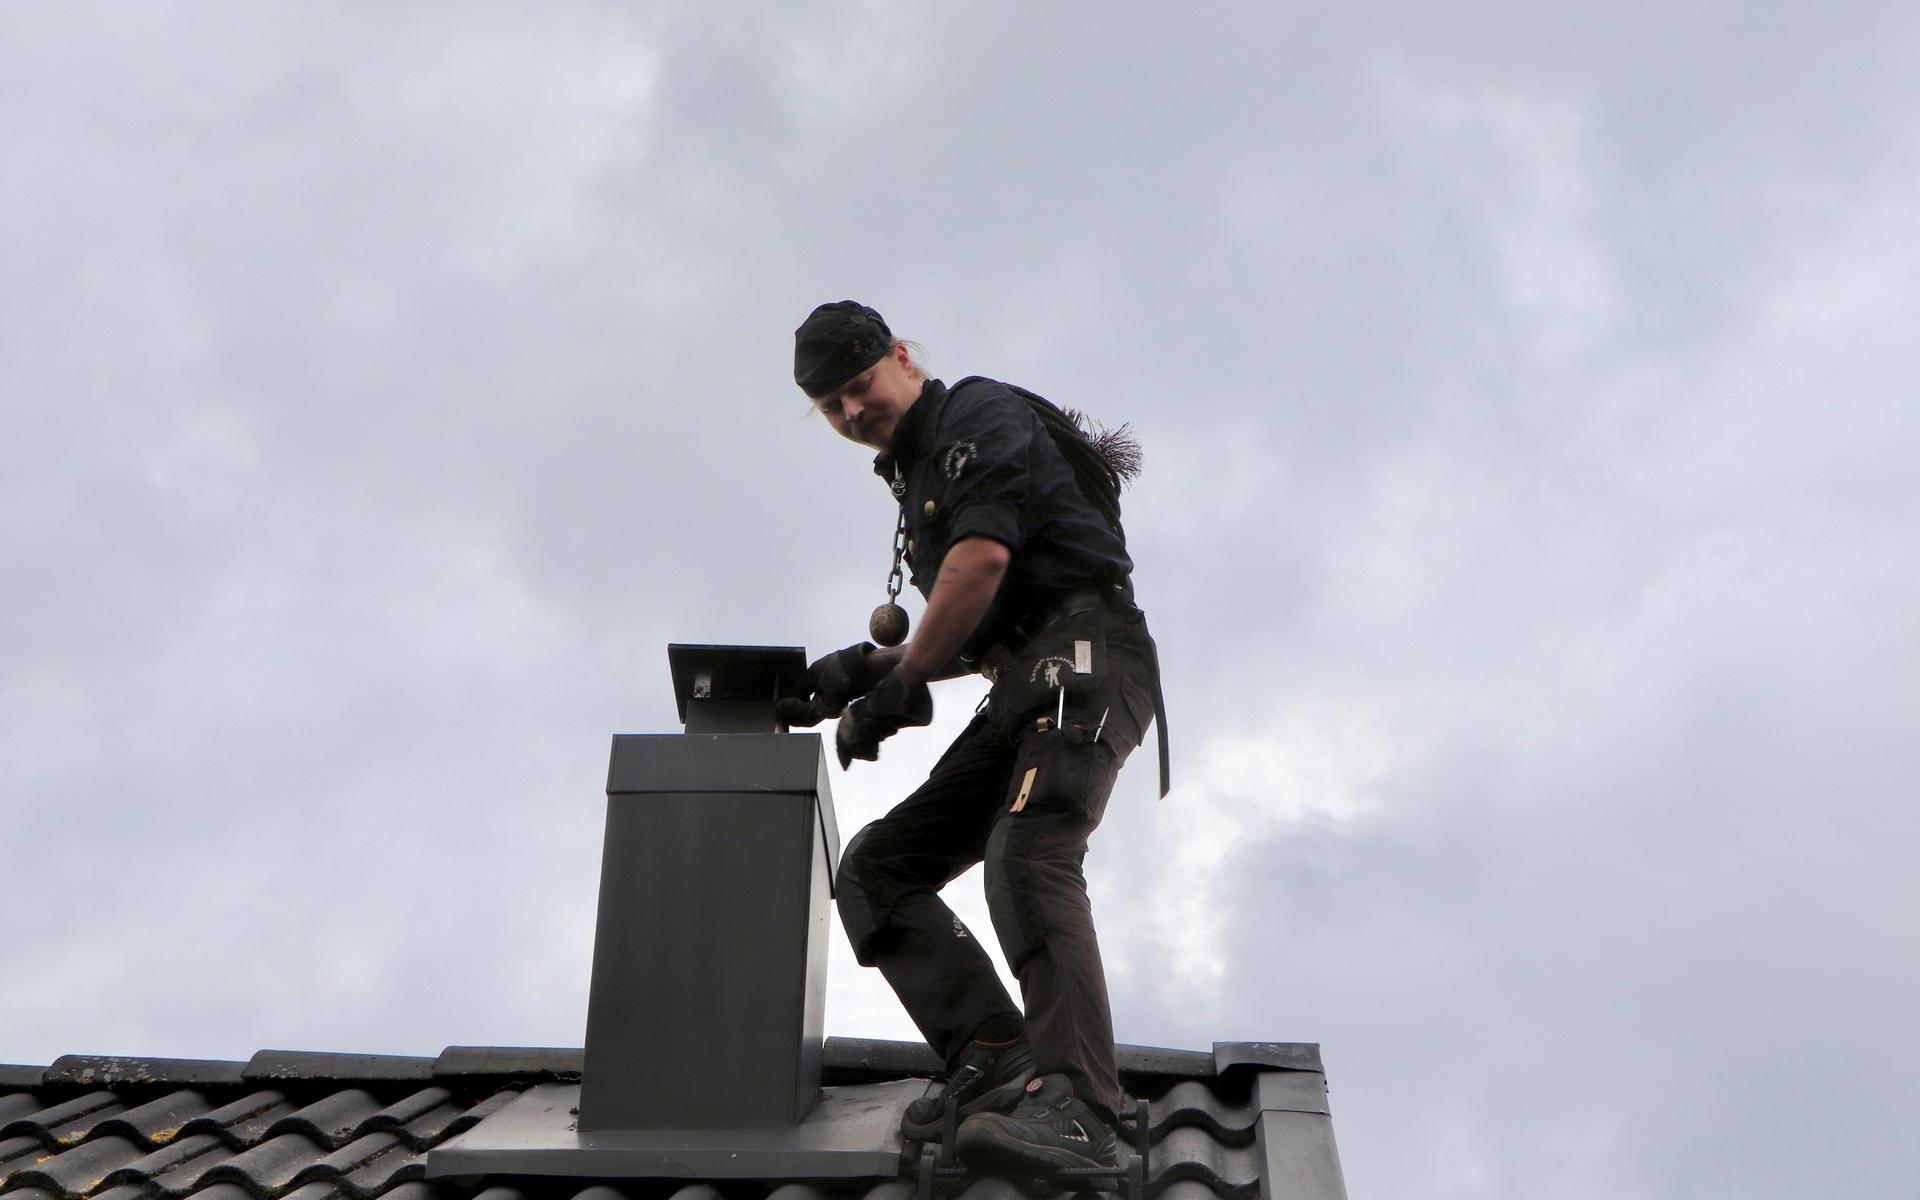 Johan traskar vant över takpannorna för att nå fram till skorstenen. Sotarna har ingen säkerhetsutrustning på sig uppe på taken. 